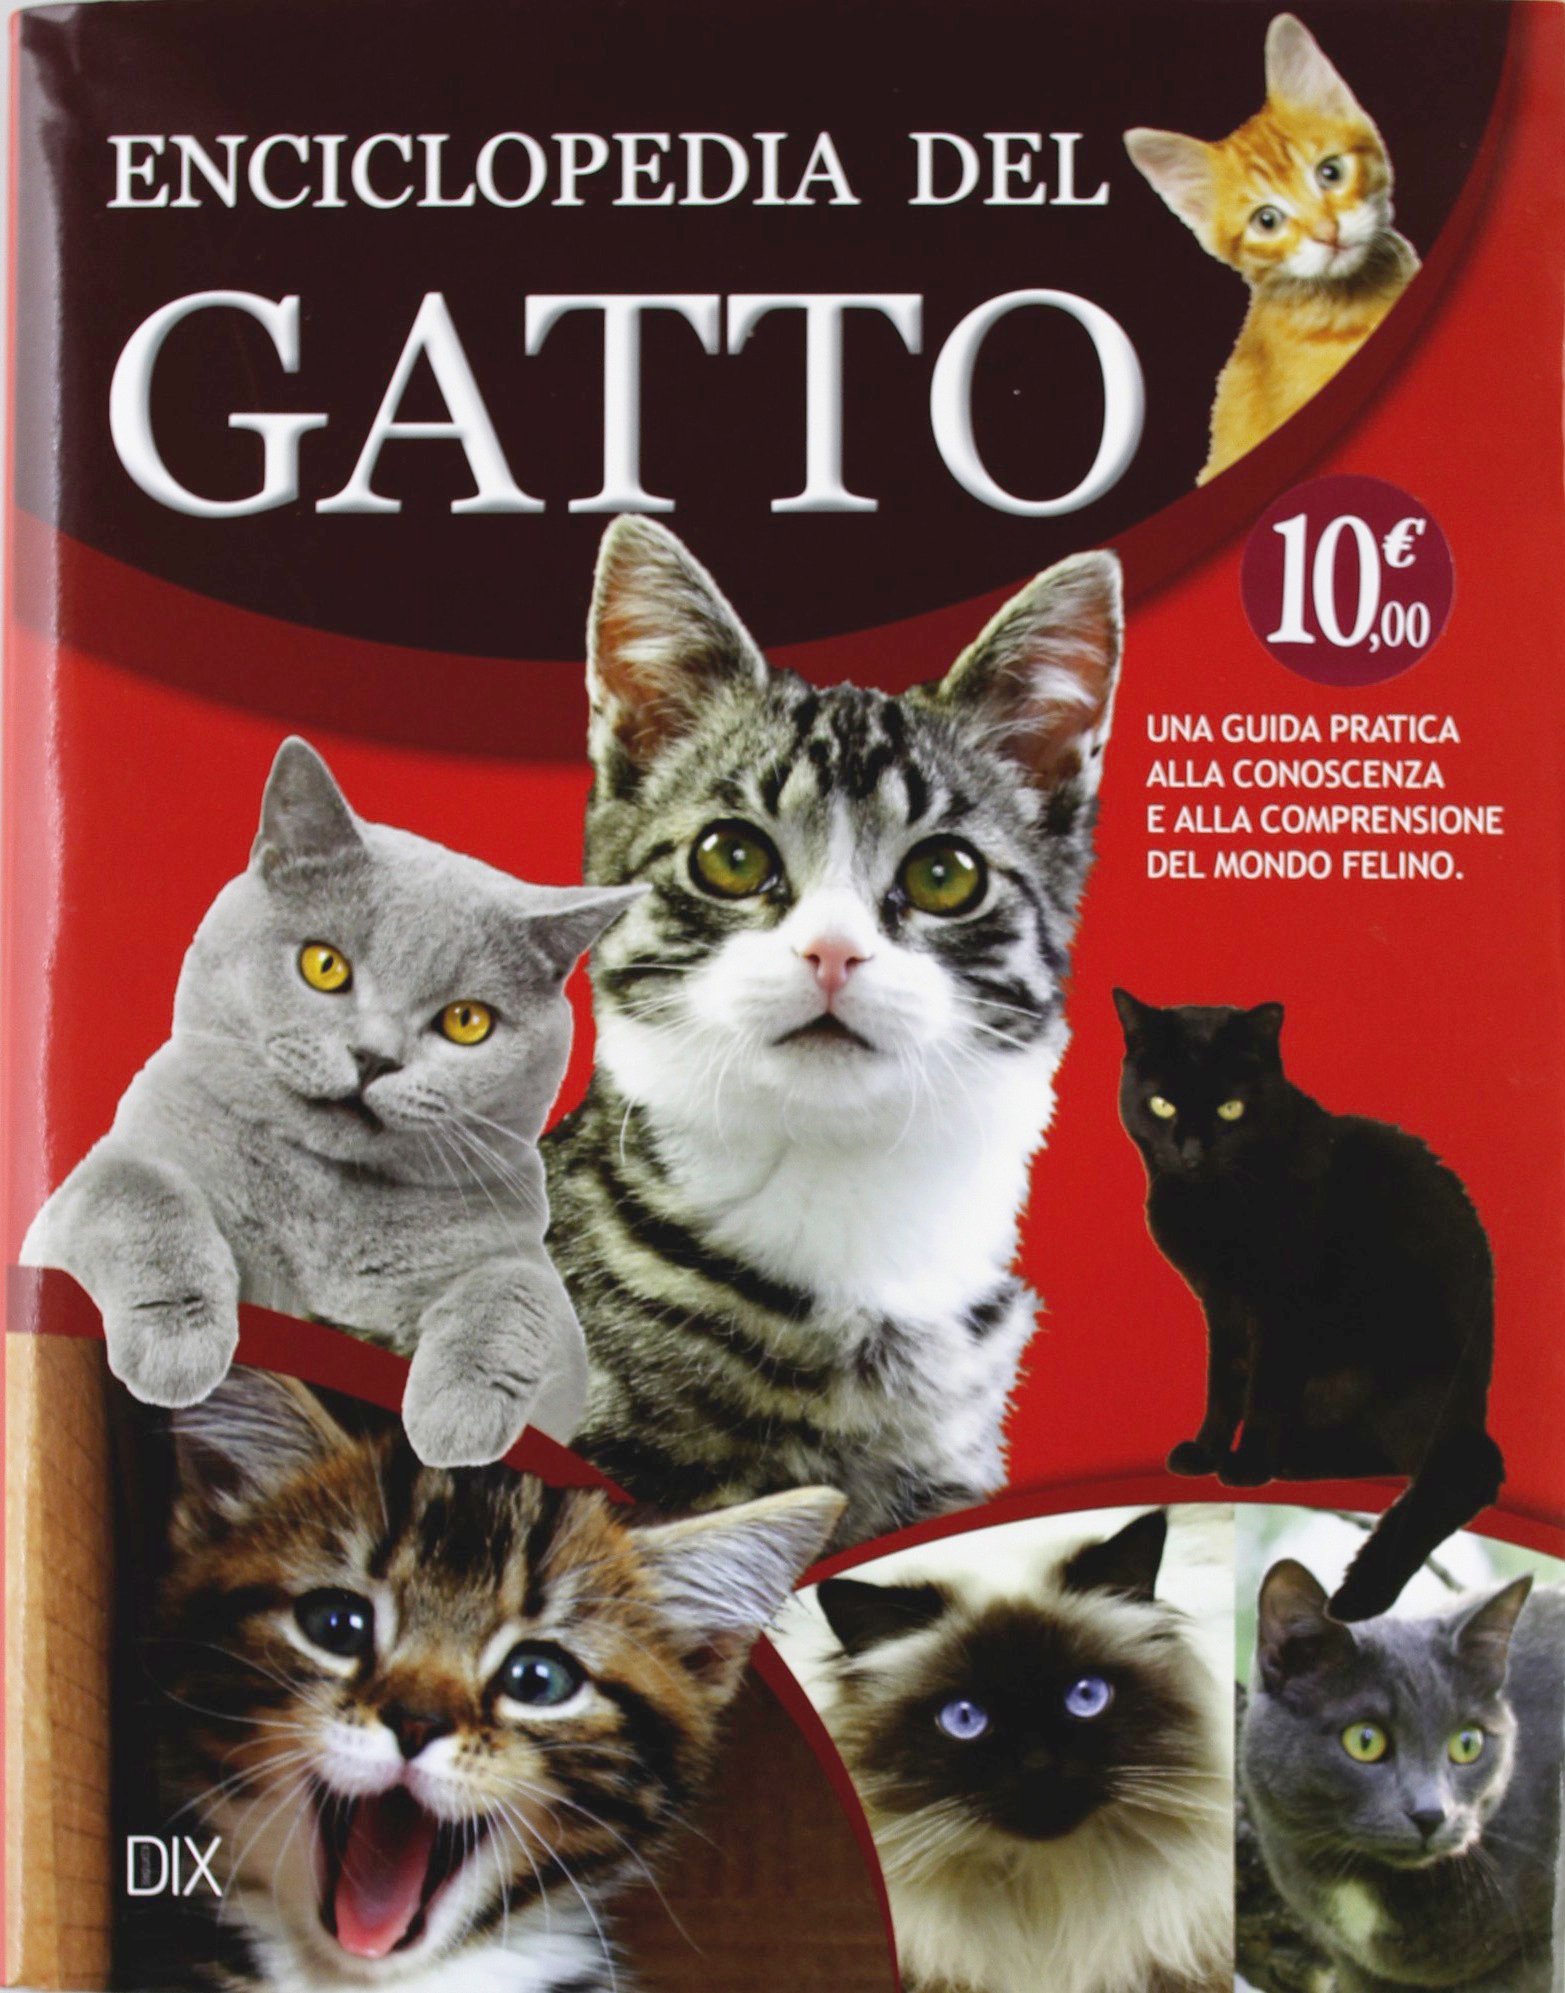 Enciclopedia del gatto - Gioele Dix